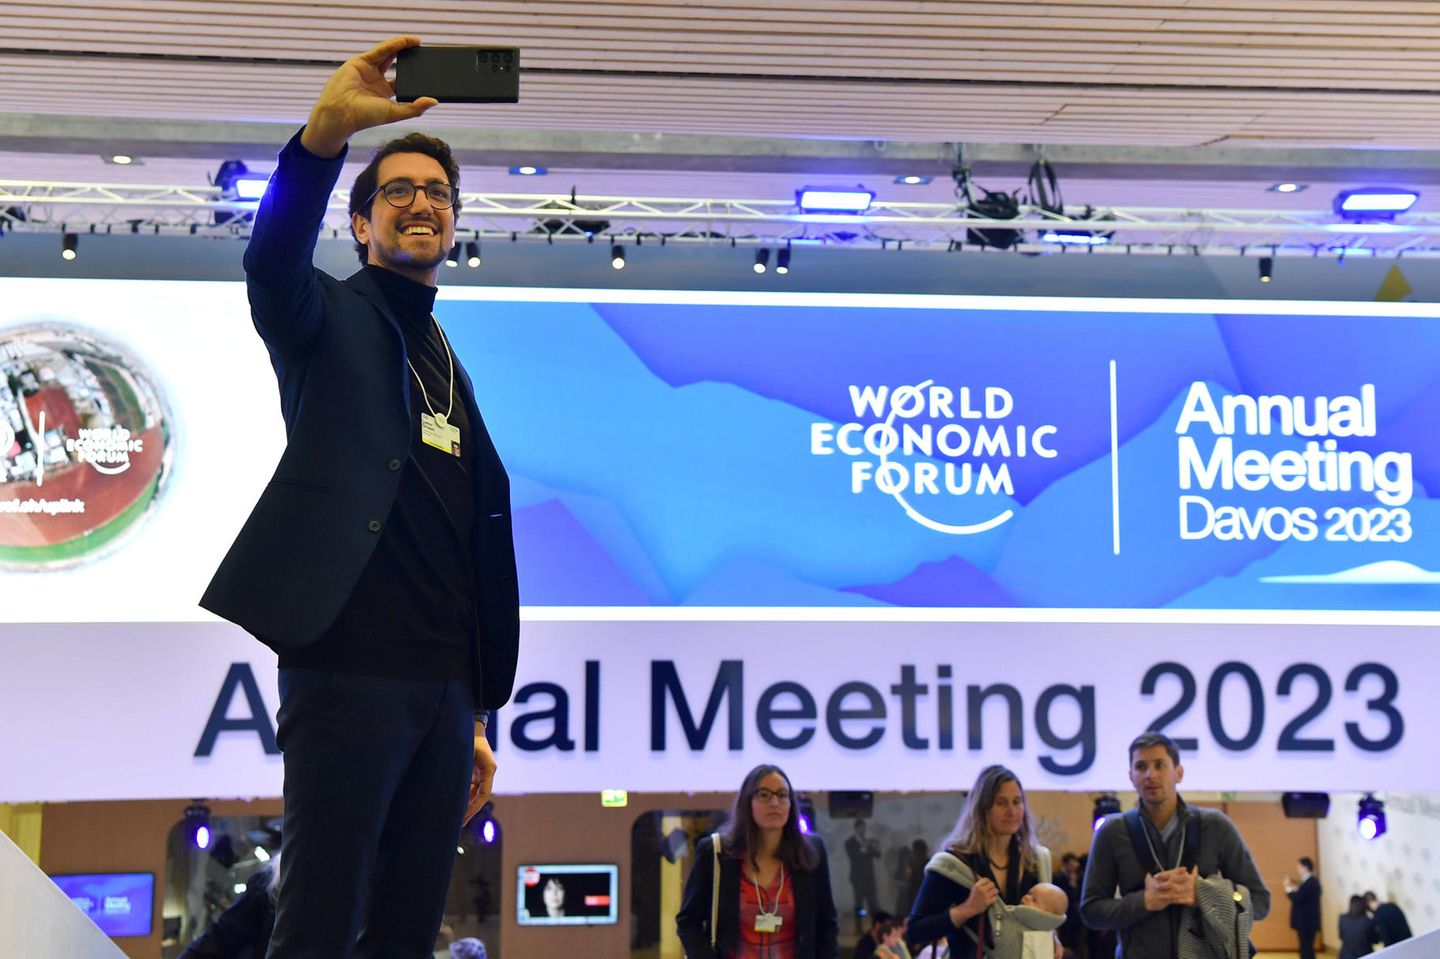 Ein Besucher des Weltwirtschaftsforum macht ein Selfie nach dem Ende der Veranstaltung